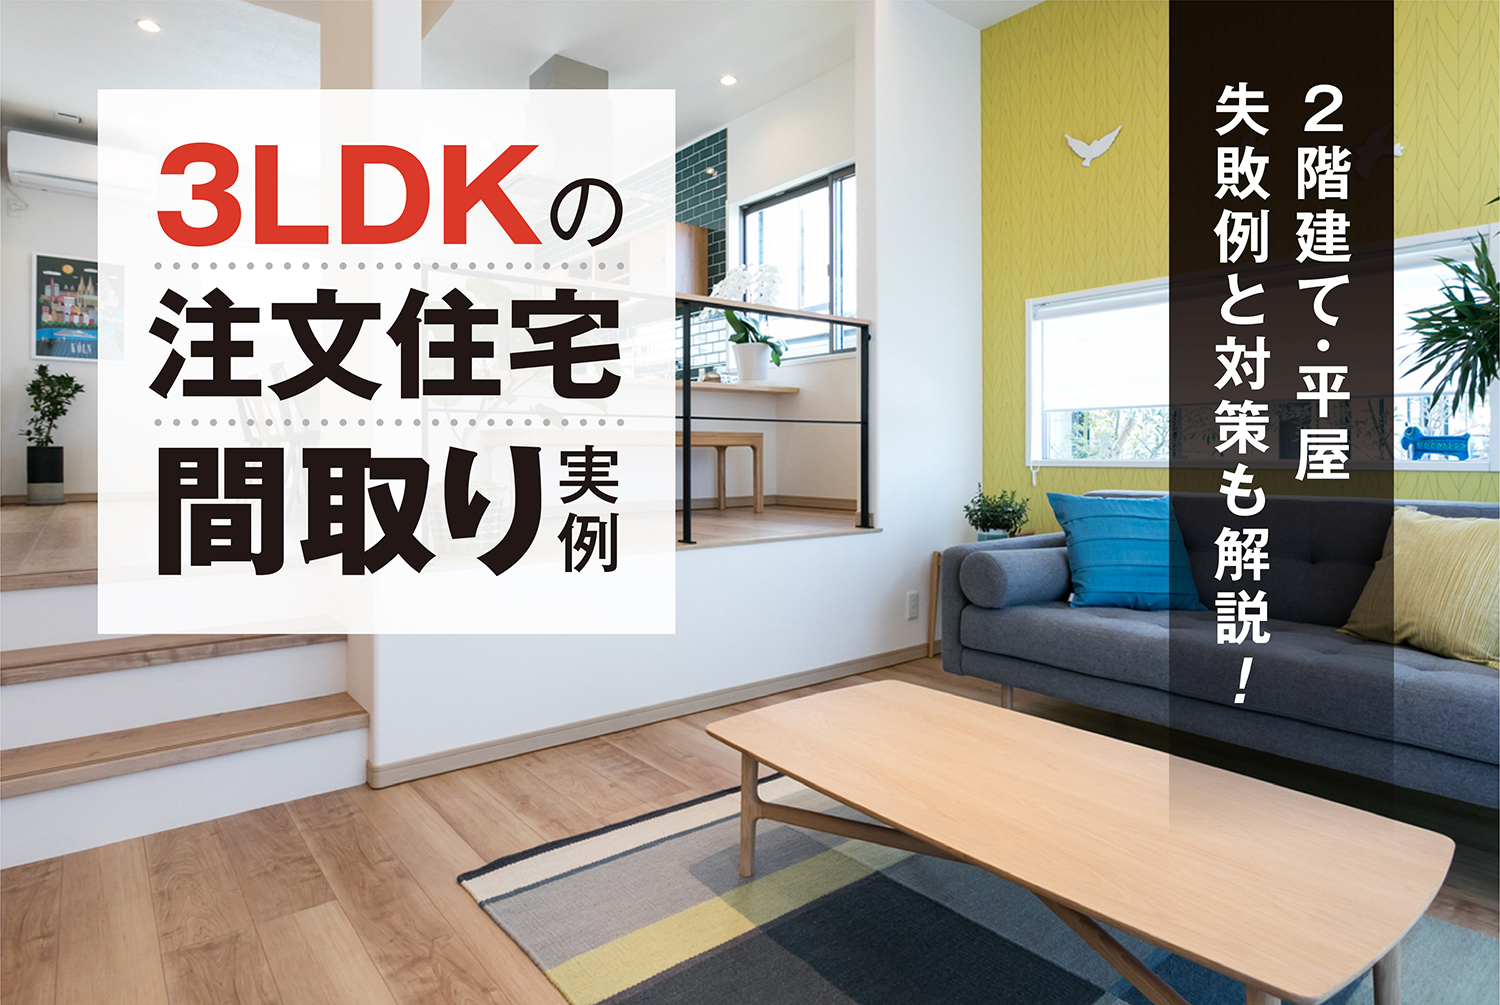 3LDKの注文住宅間取り実例【平屋・2階建て】失敗例と対策も解説